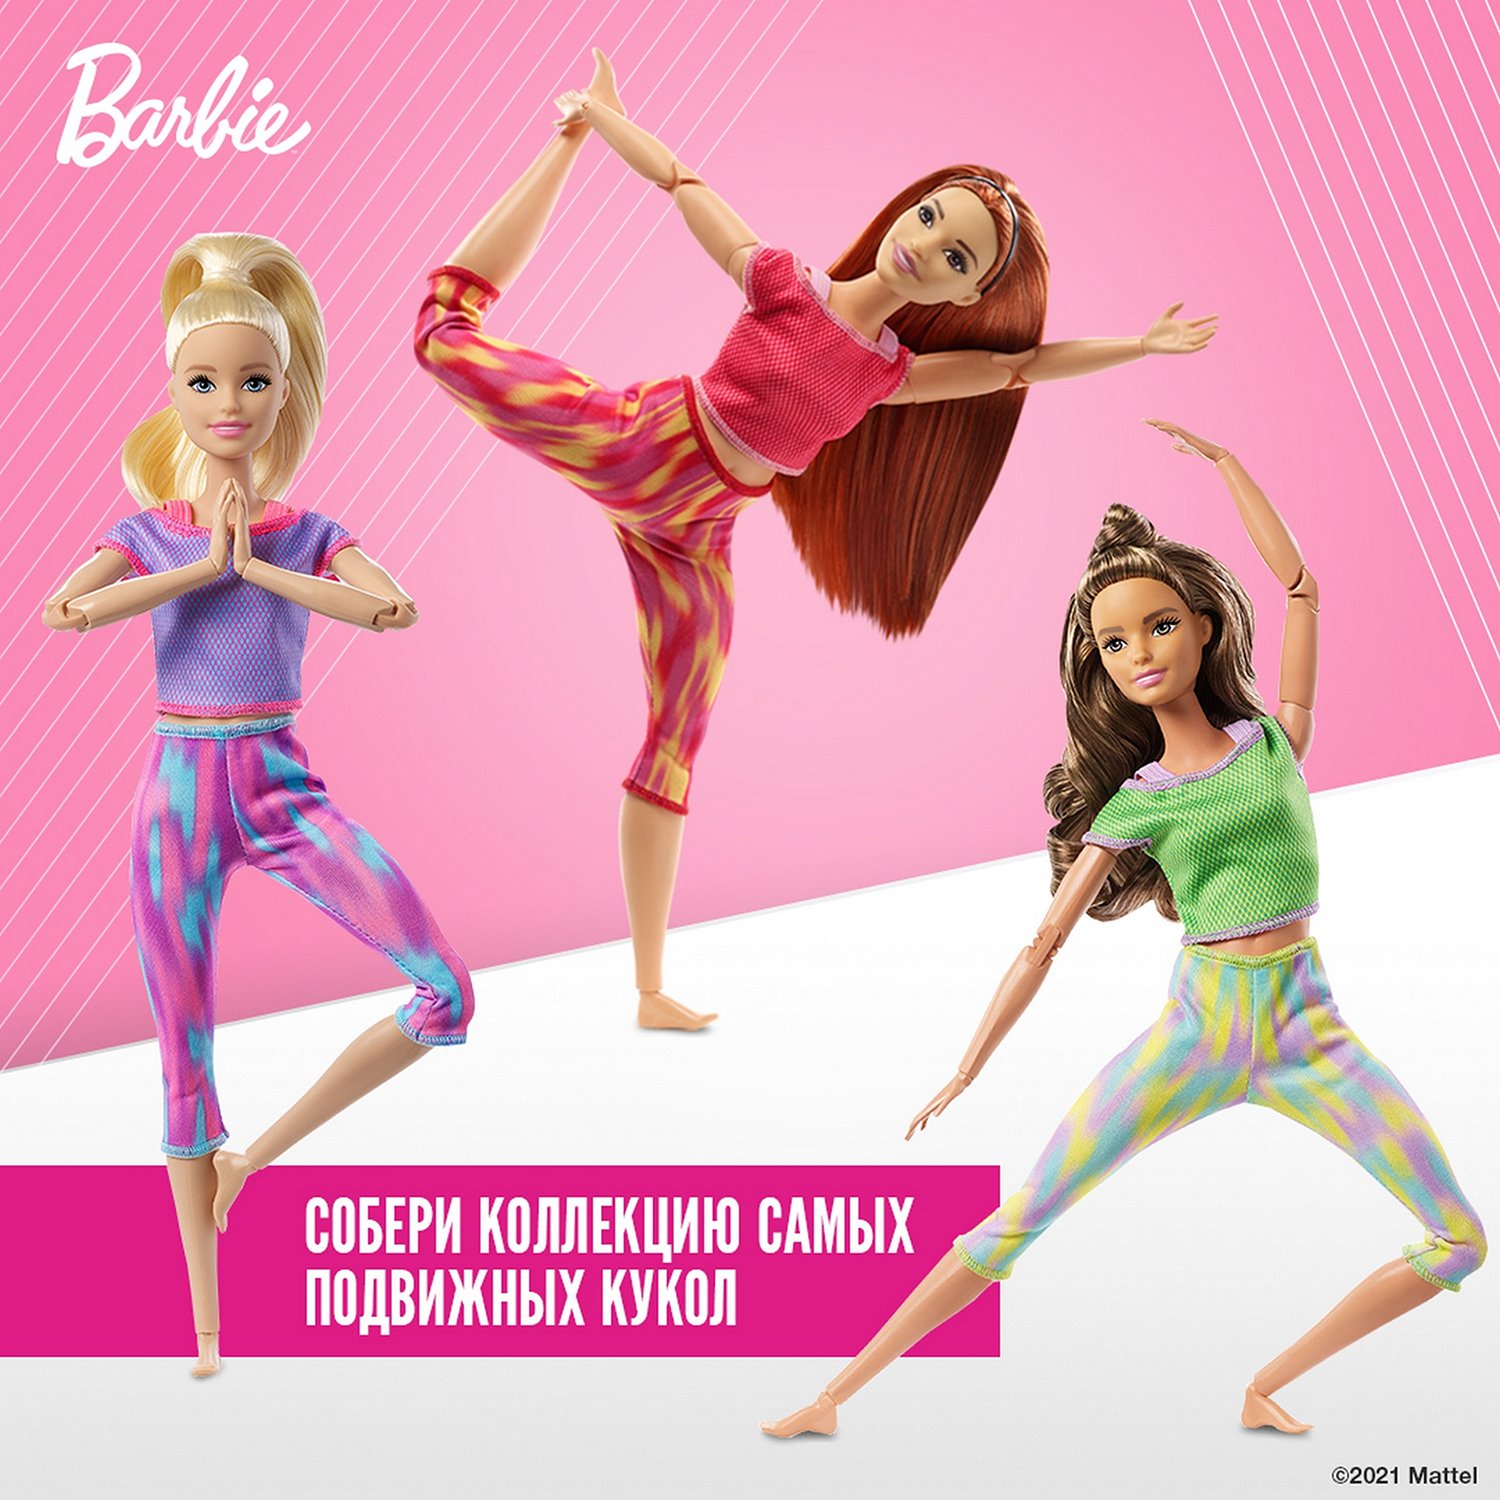 Кукла Barbie GXF07 Безграничные движения 4